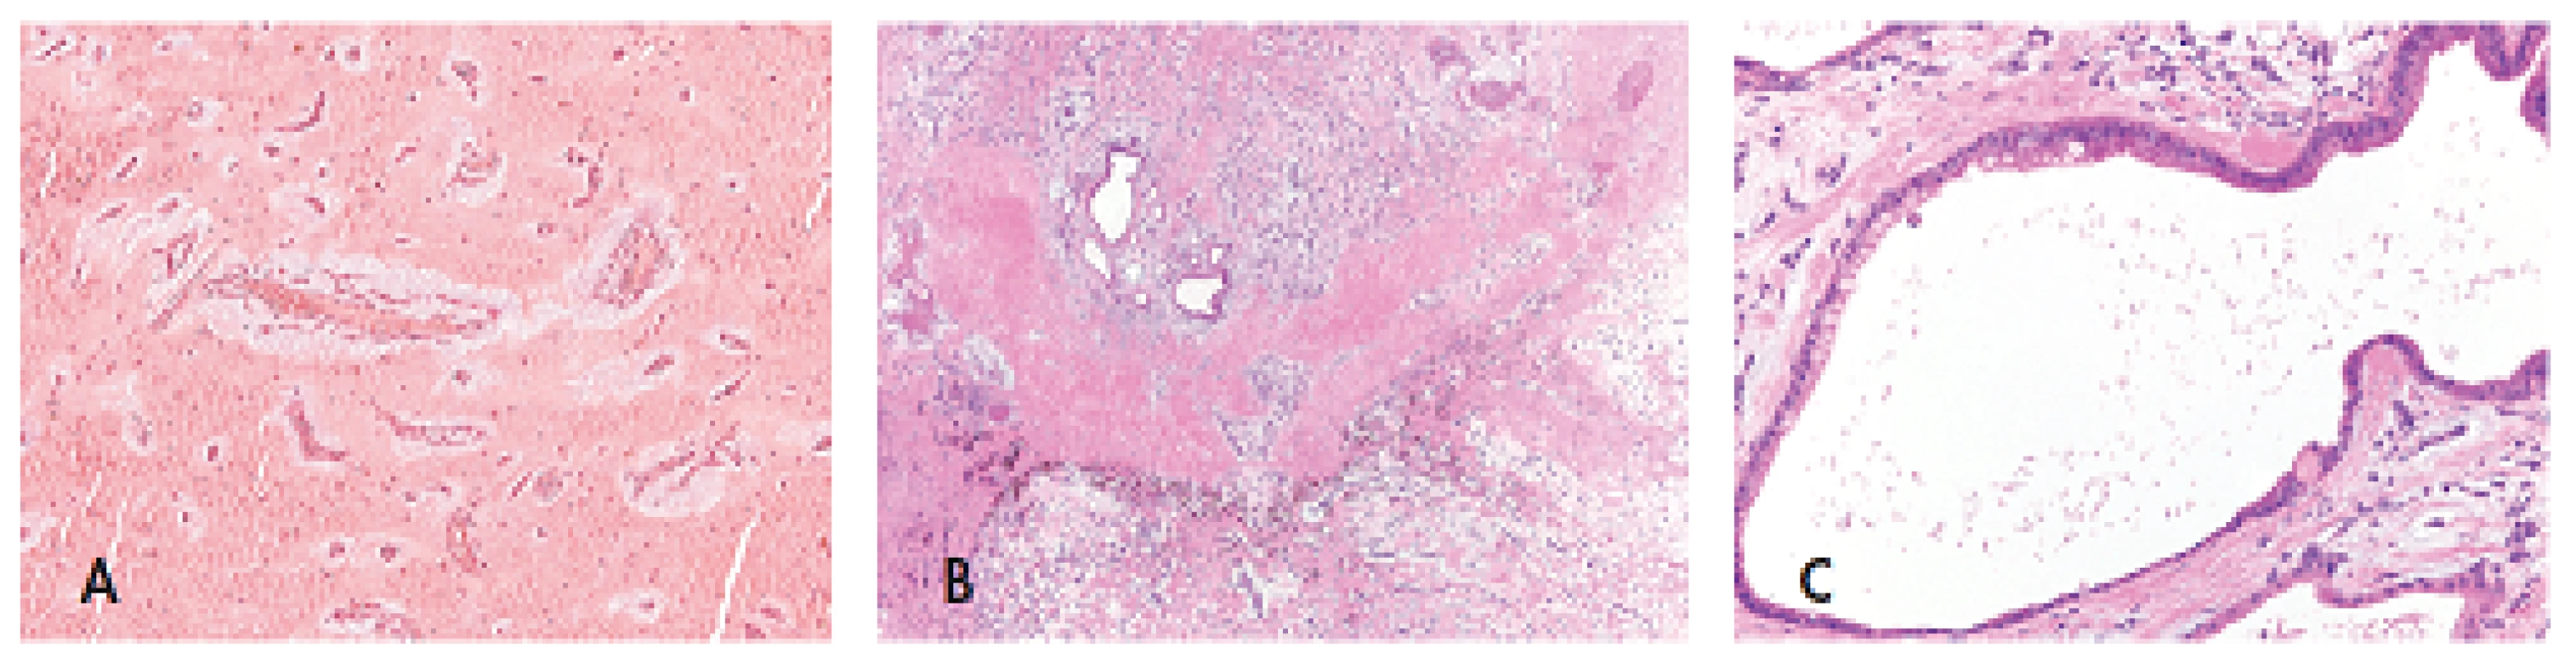 Srdeční myxom tvořený kulatými, polygonálními a cípatými buňkami hojně obklopenými stromatem bohatým na mukopolysacharidy a rostoucími kolem cévních struktur (A, zvětšení 200x); velmi vzácně může být u CNC součástí srdečního myxomu glandulární komponenta s typickým kolumnarním žlazovým epitelem s pohárkovými buňkami (B, zvětšení 40x; C, zvětšení 200x). Barveno hematoxylinem eozinem.